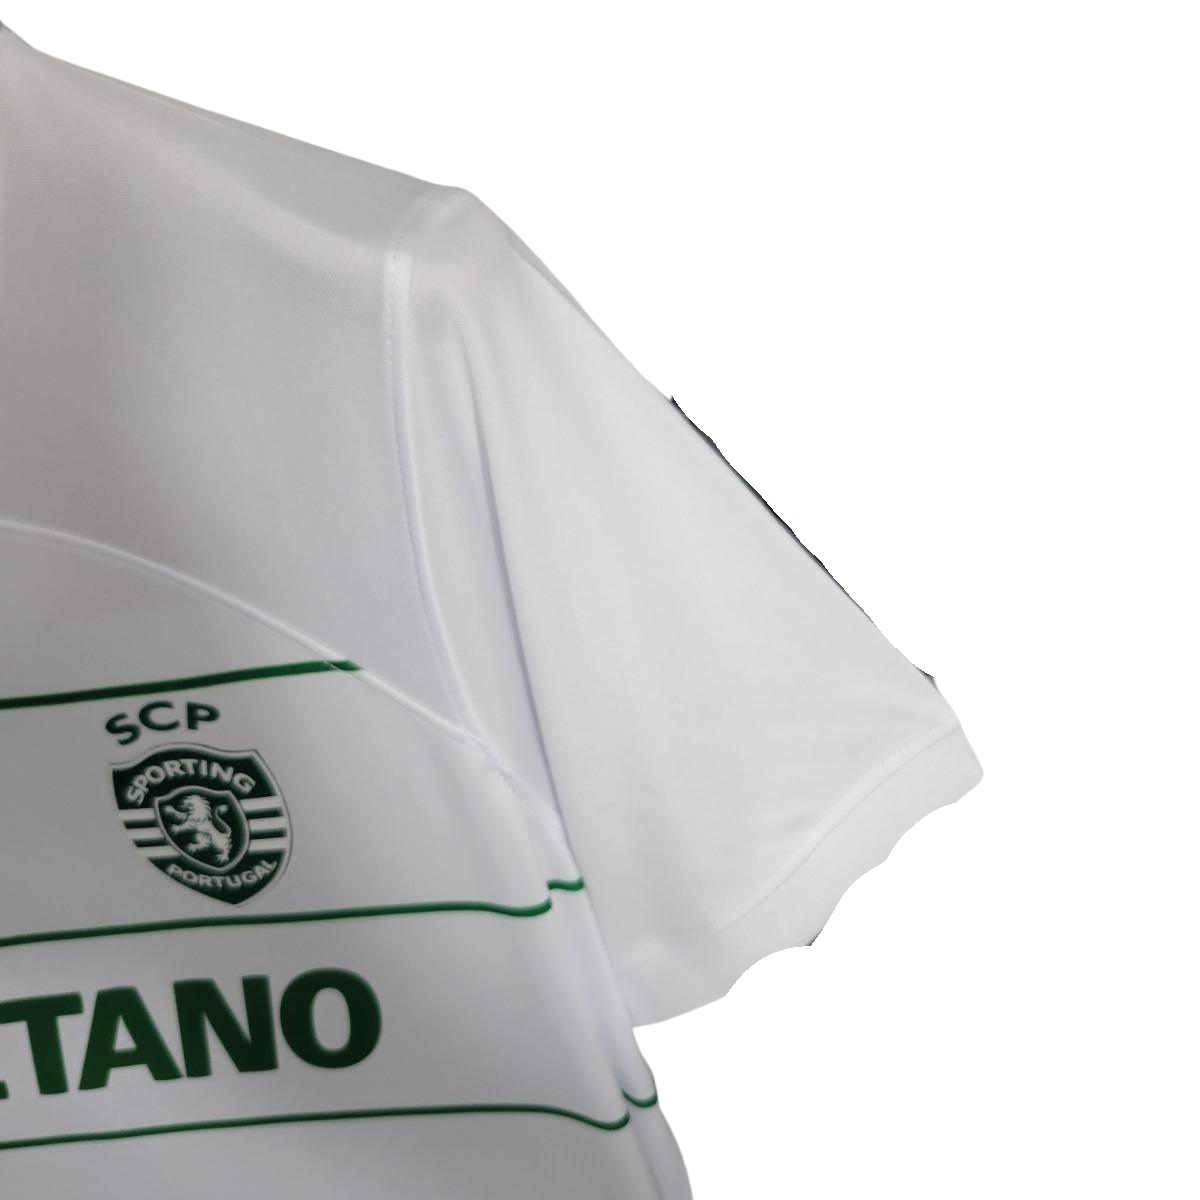 Sporting Lisboa Away kit 23-24 - Fan version - Side